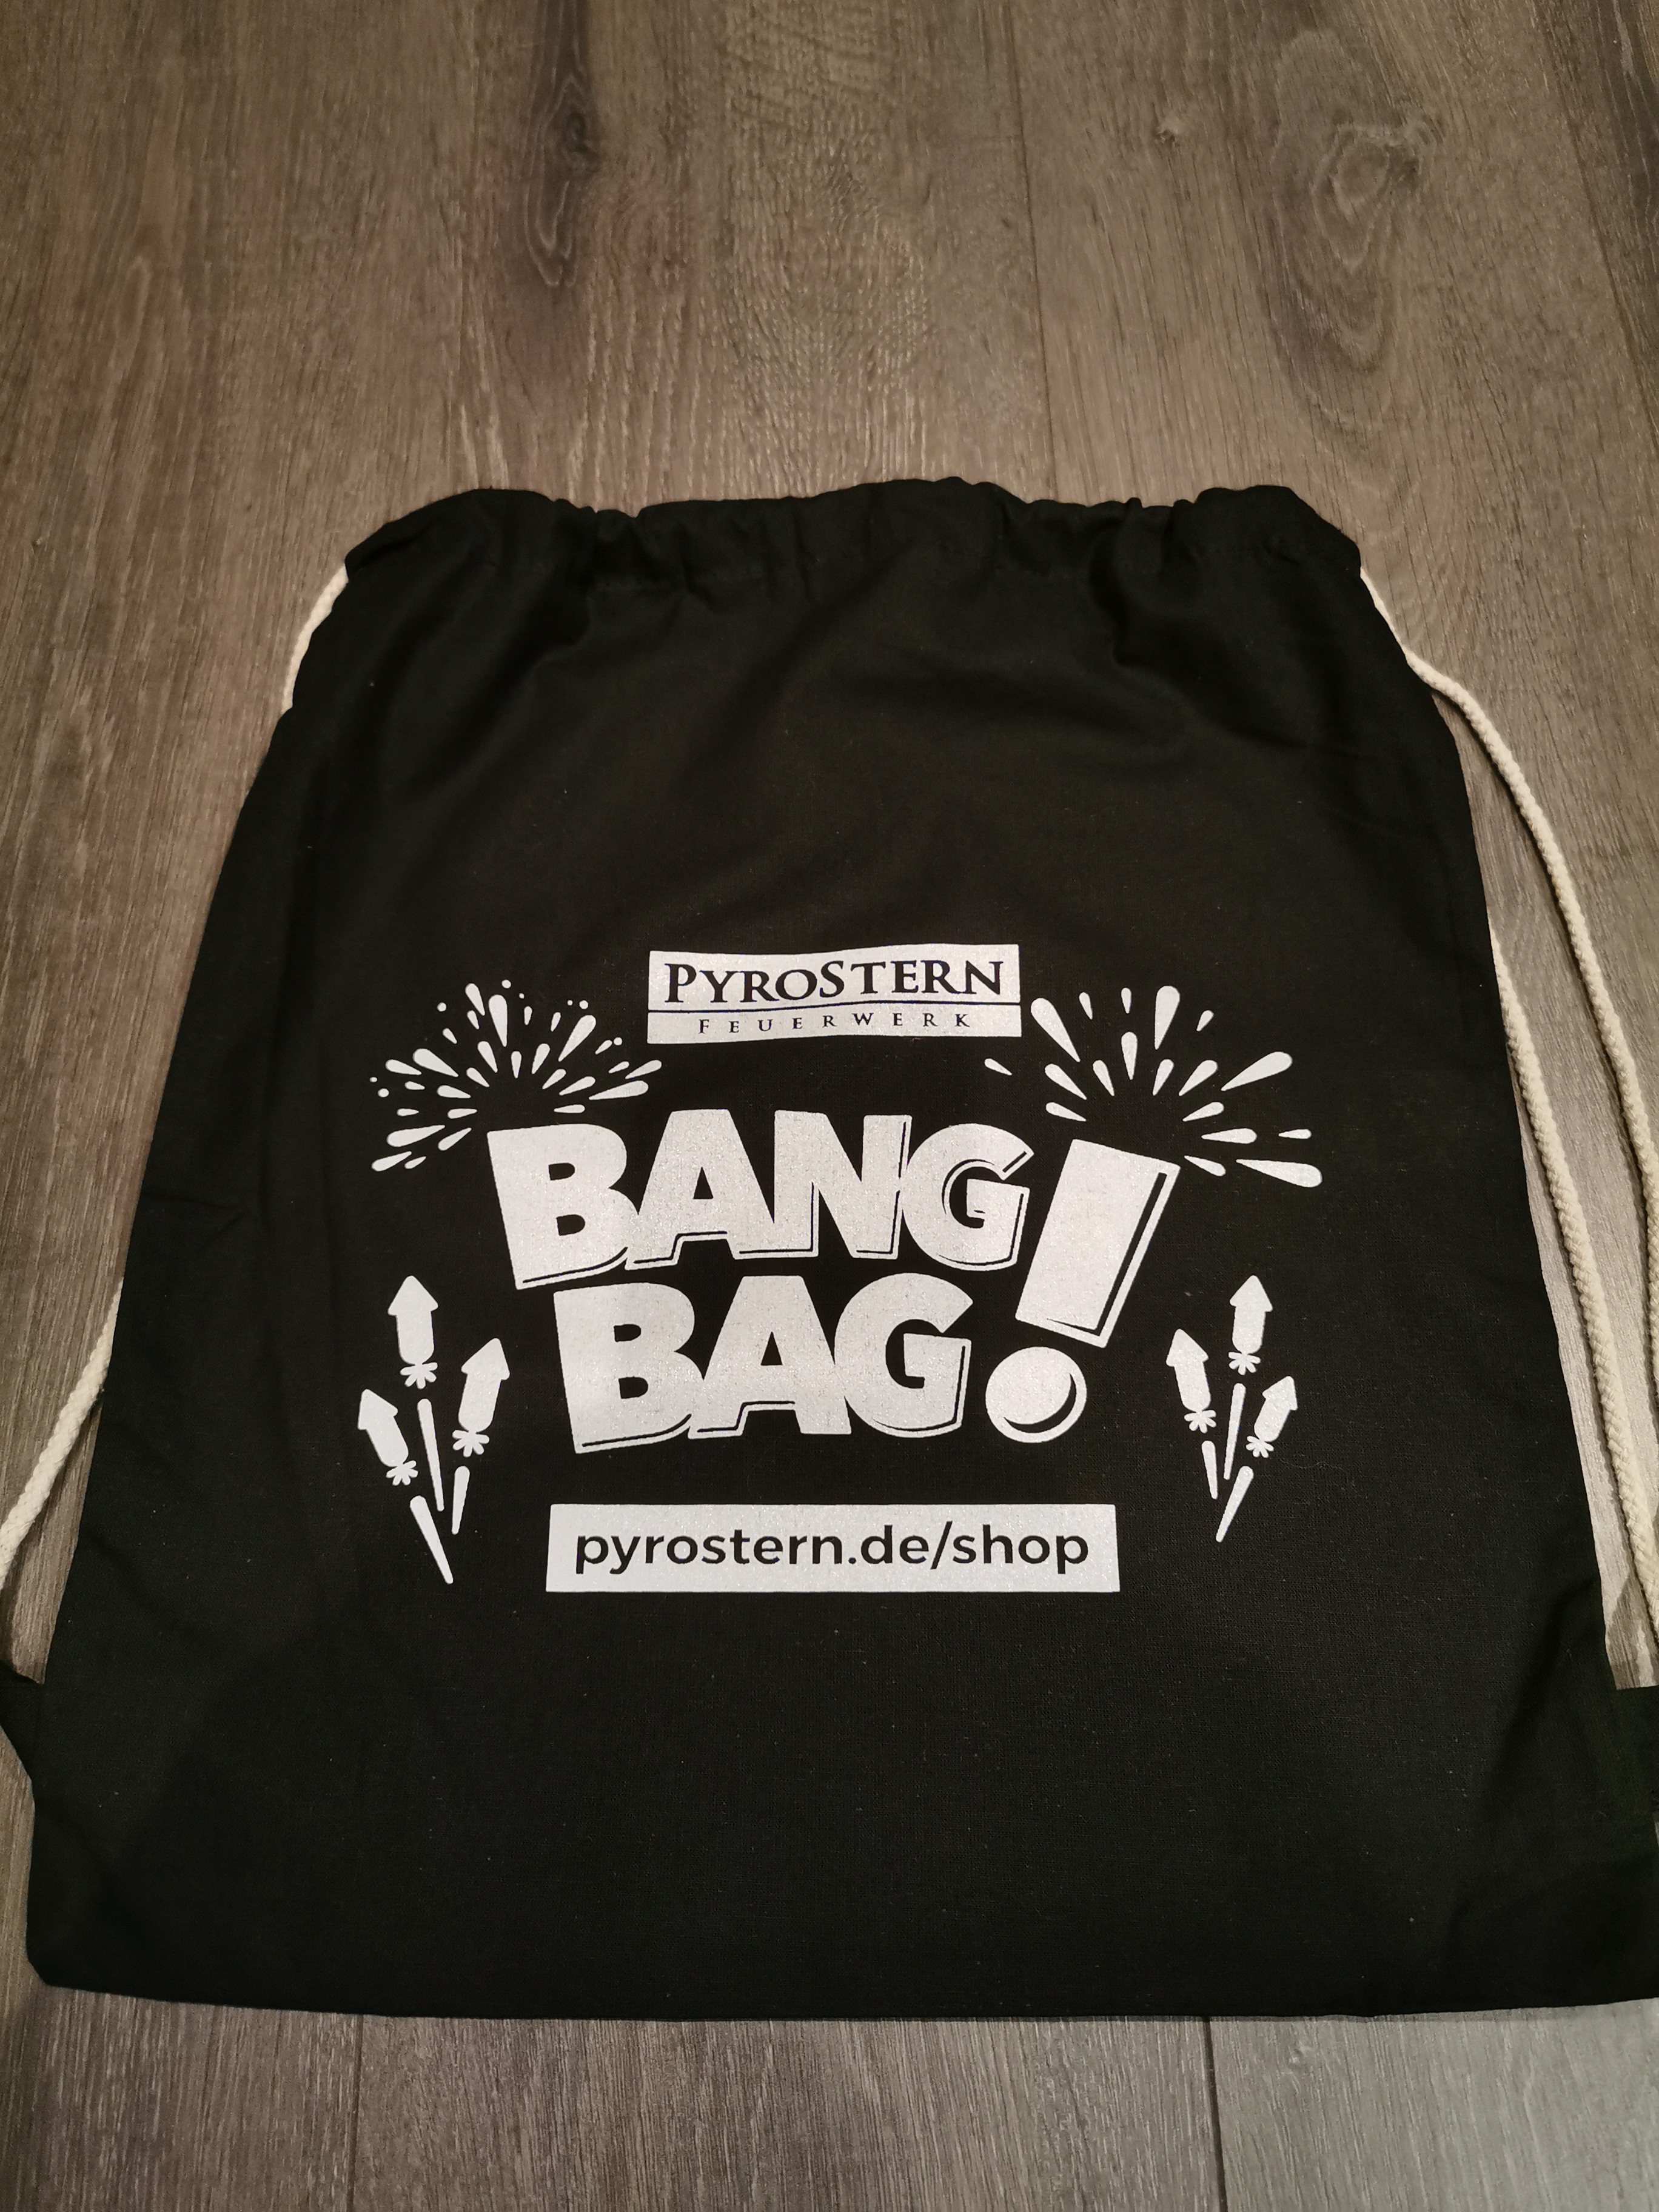 PyroStern Böllerbeutel (Bang Bag)